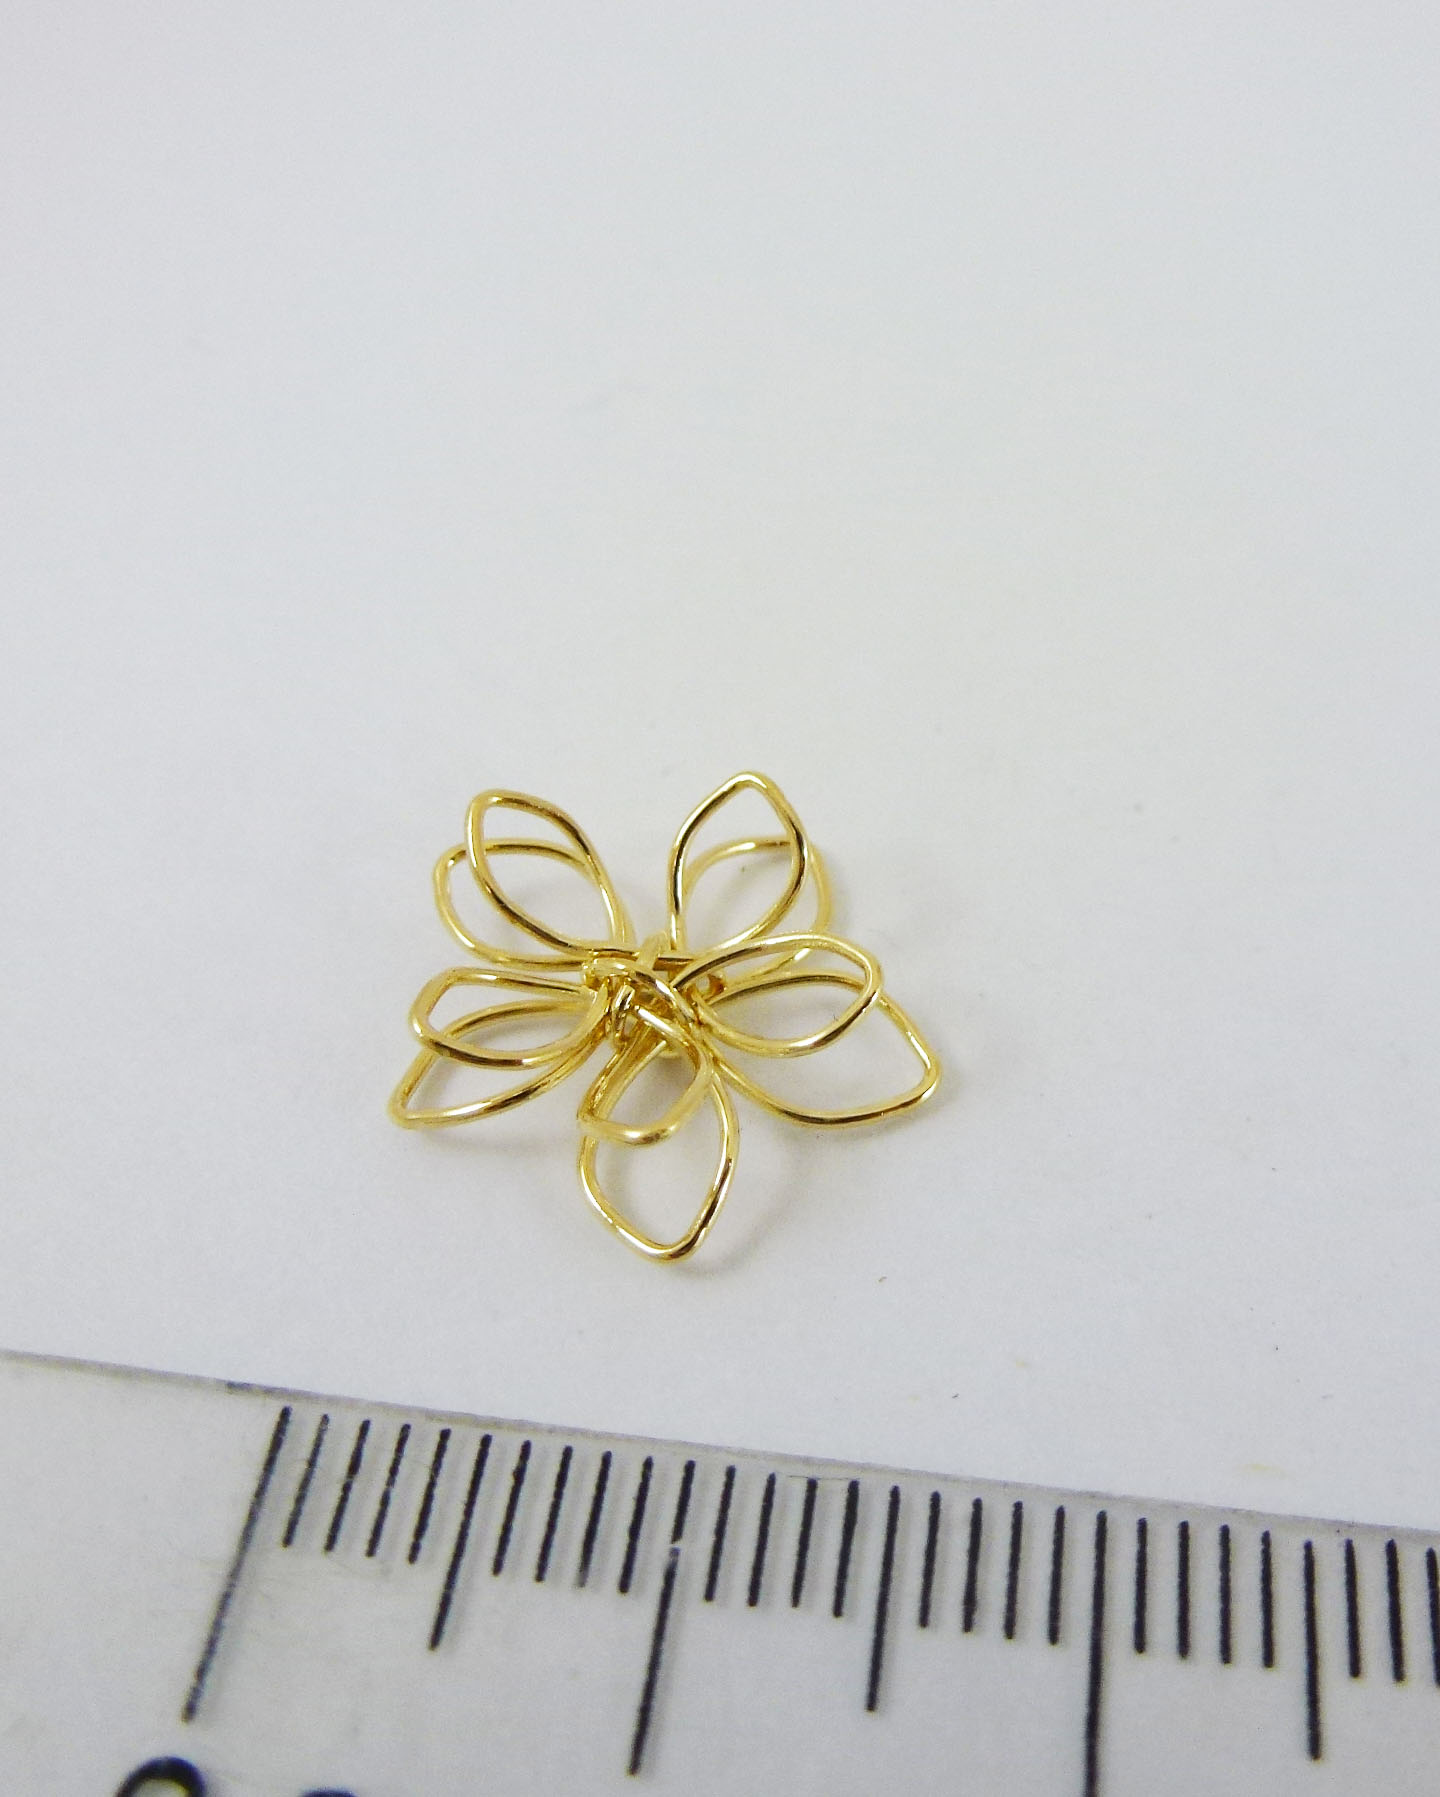 15mm銅鍍金色折線橢圓葉十瓣花